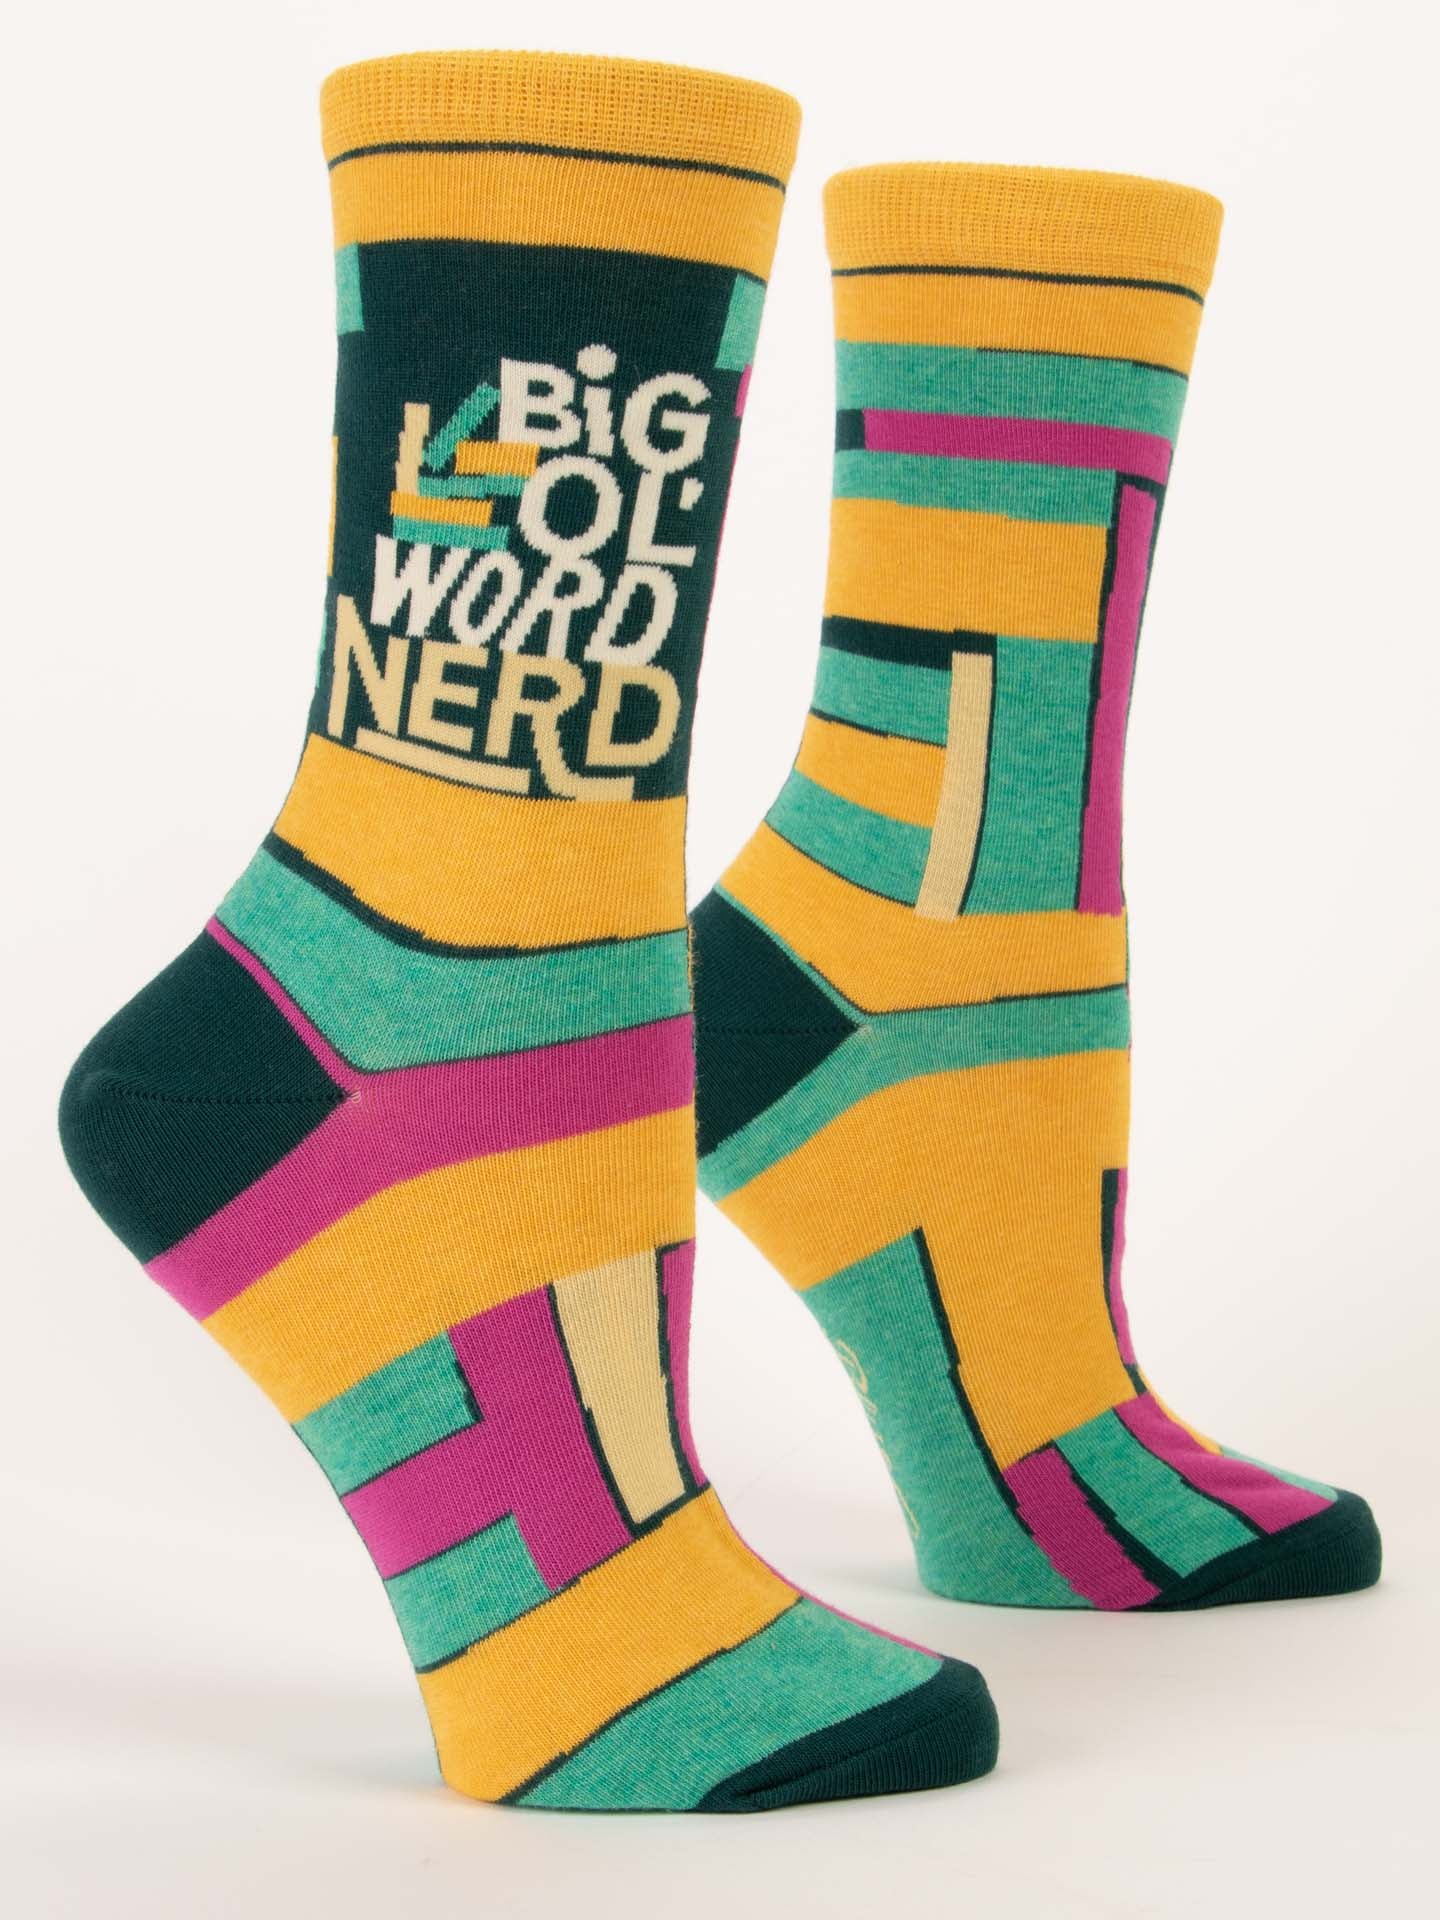 Blue Q - Big Ol' Word Nerd Crew Socks